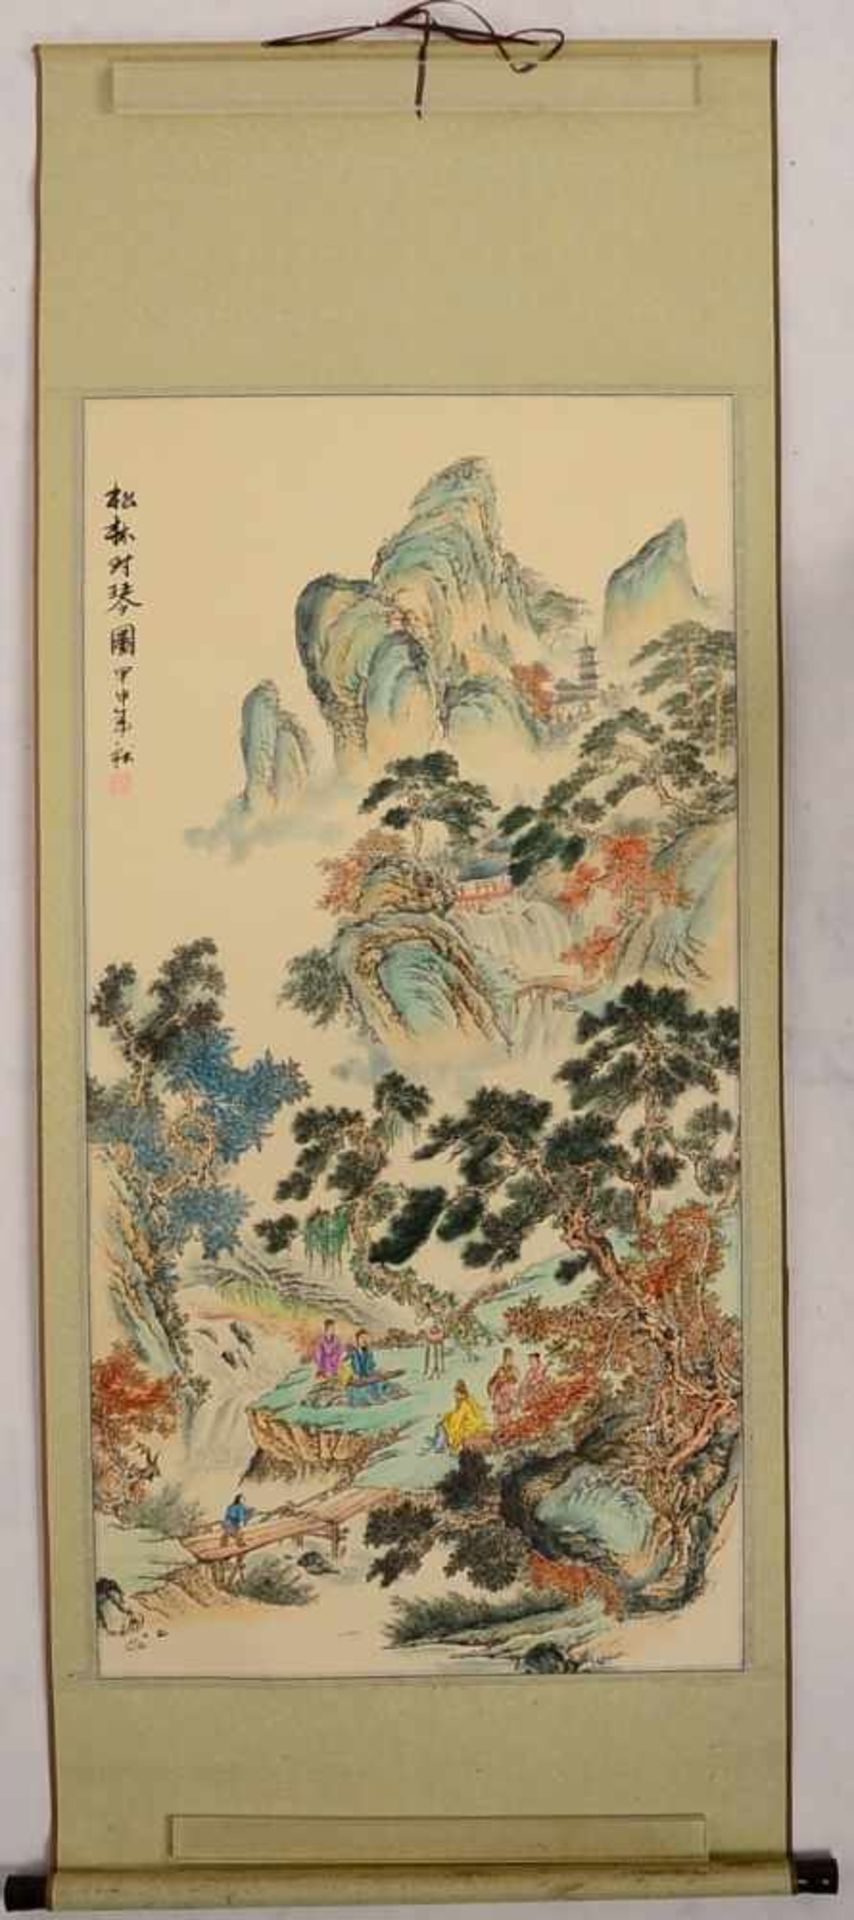 Rollbild, China, 'Personen in Landschaft', signiert und gestempelt; Maße 120 x 60 cm